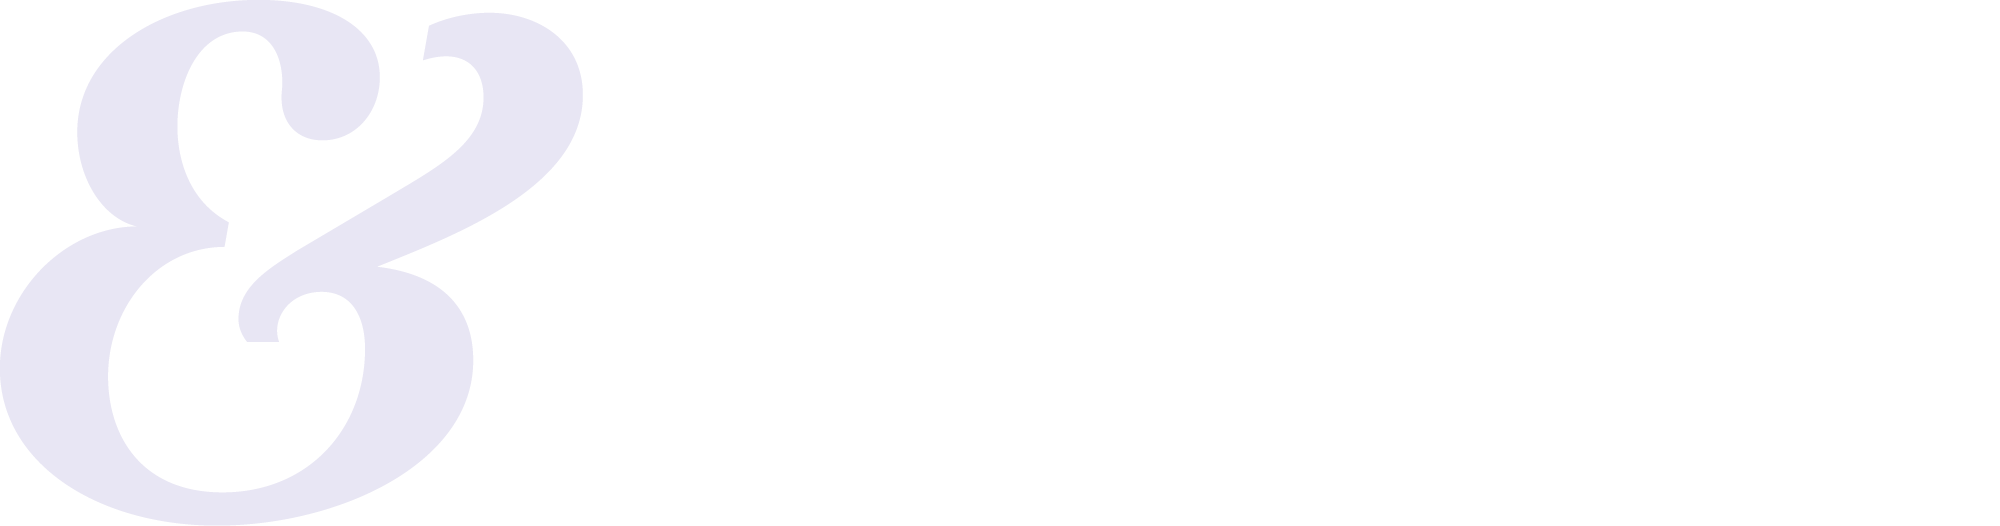 Stop indbrud logo